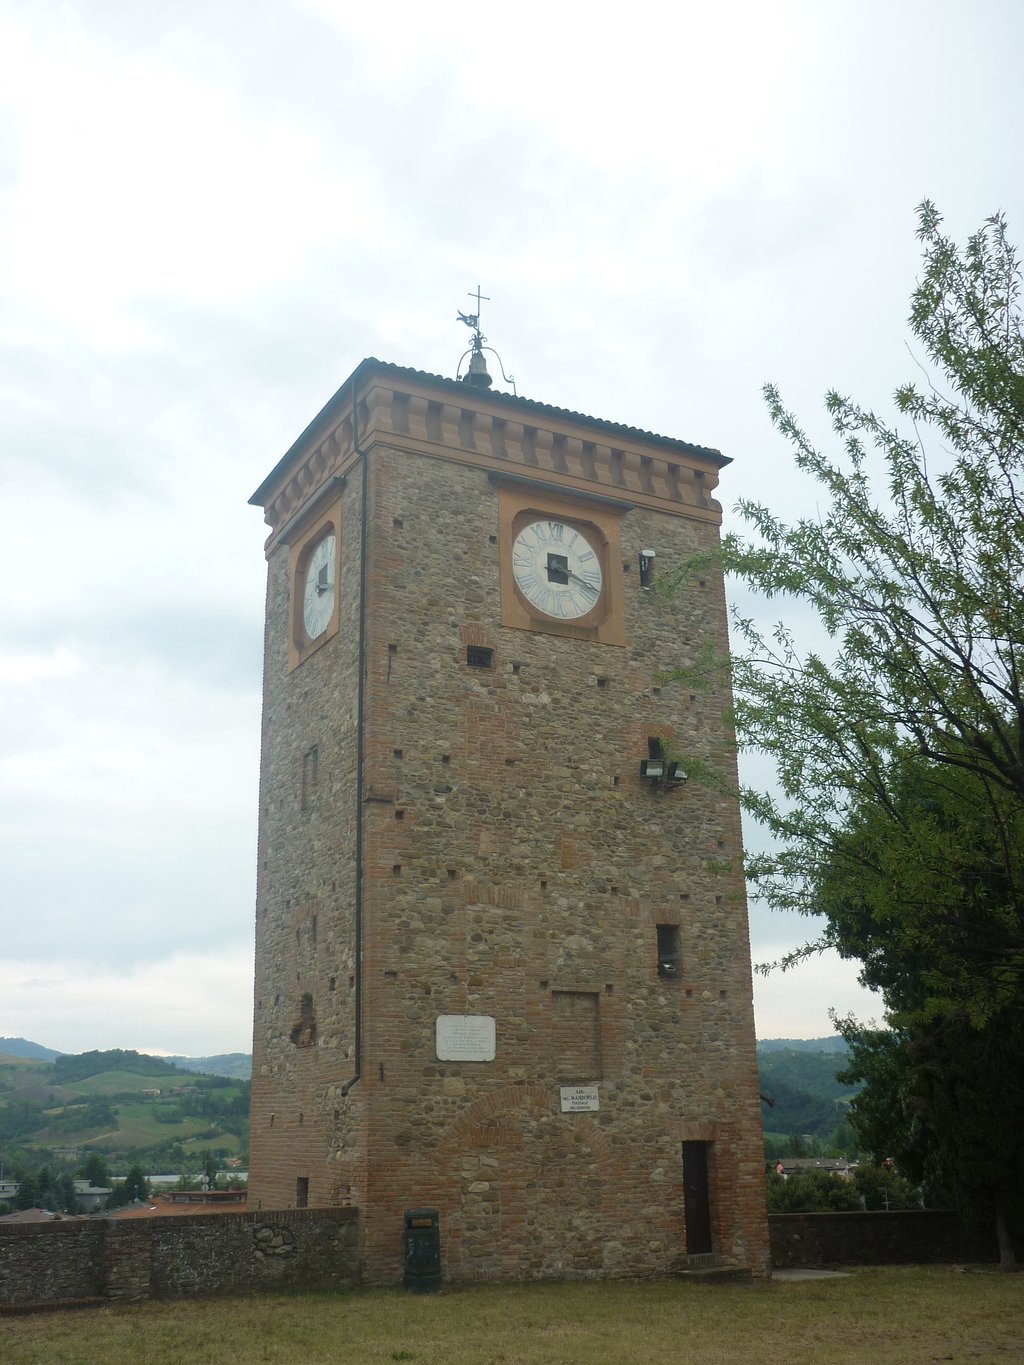 Torre dell'Orologio